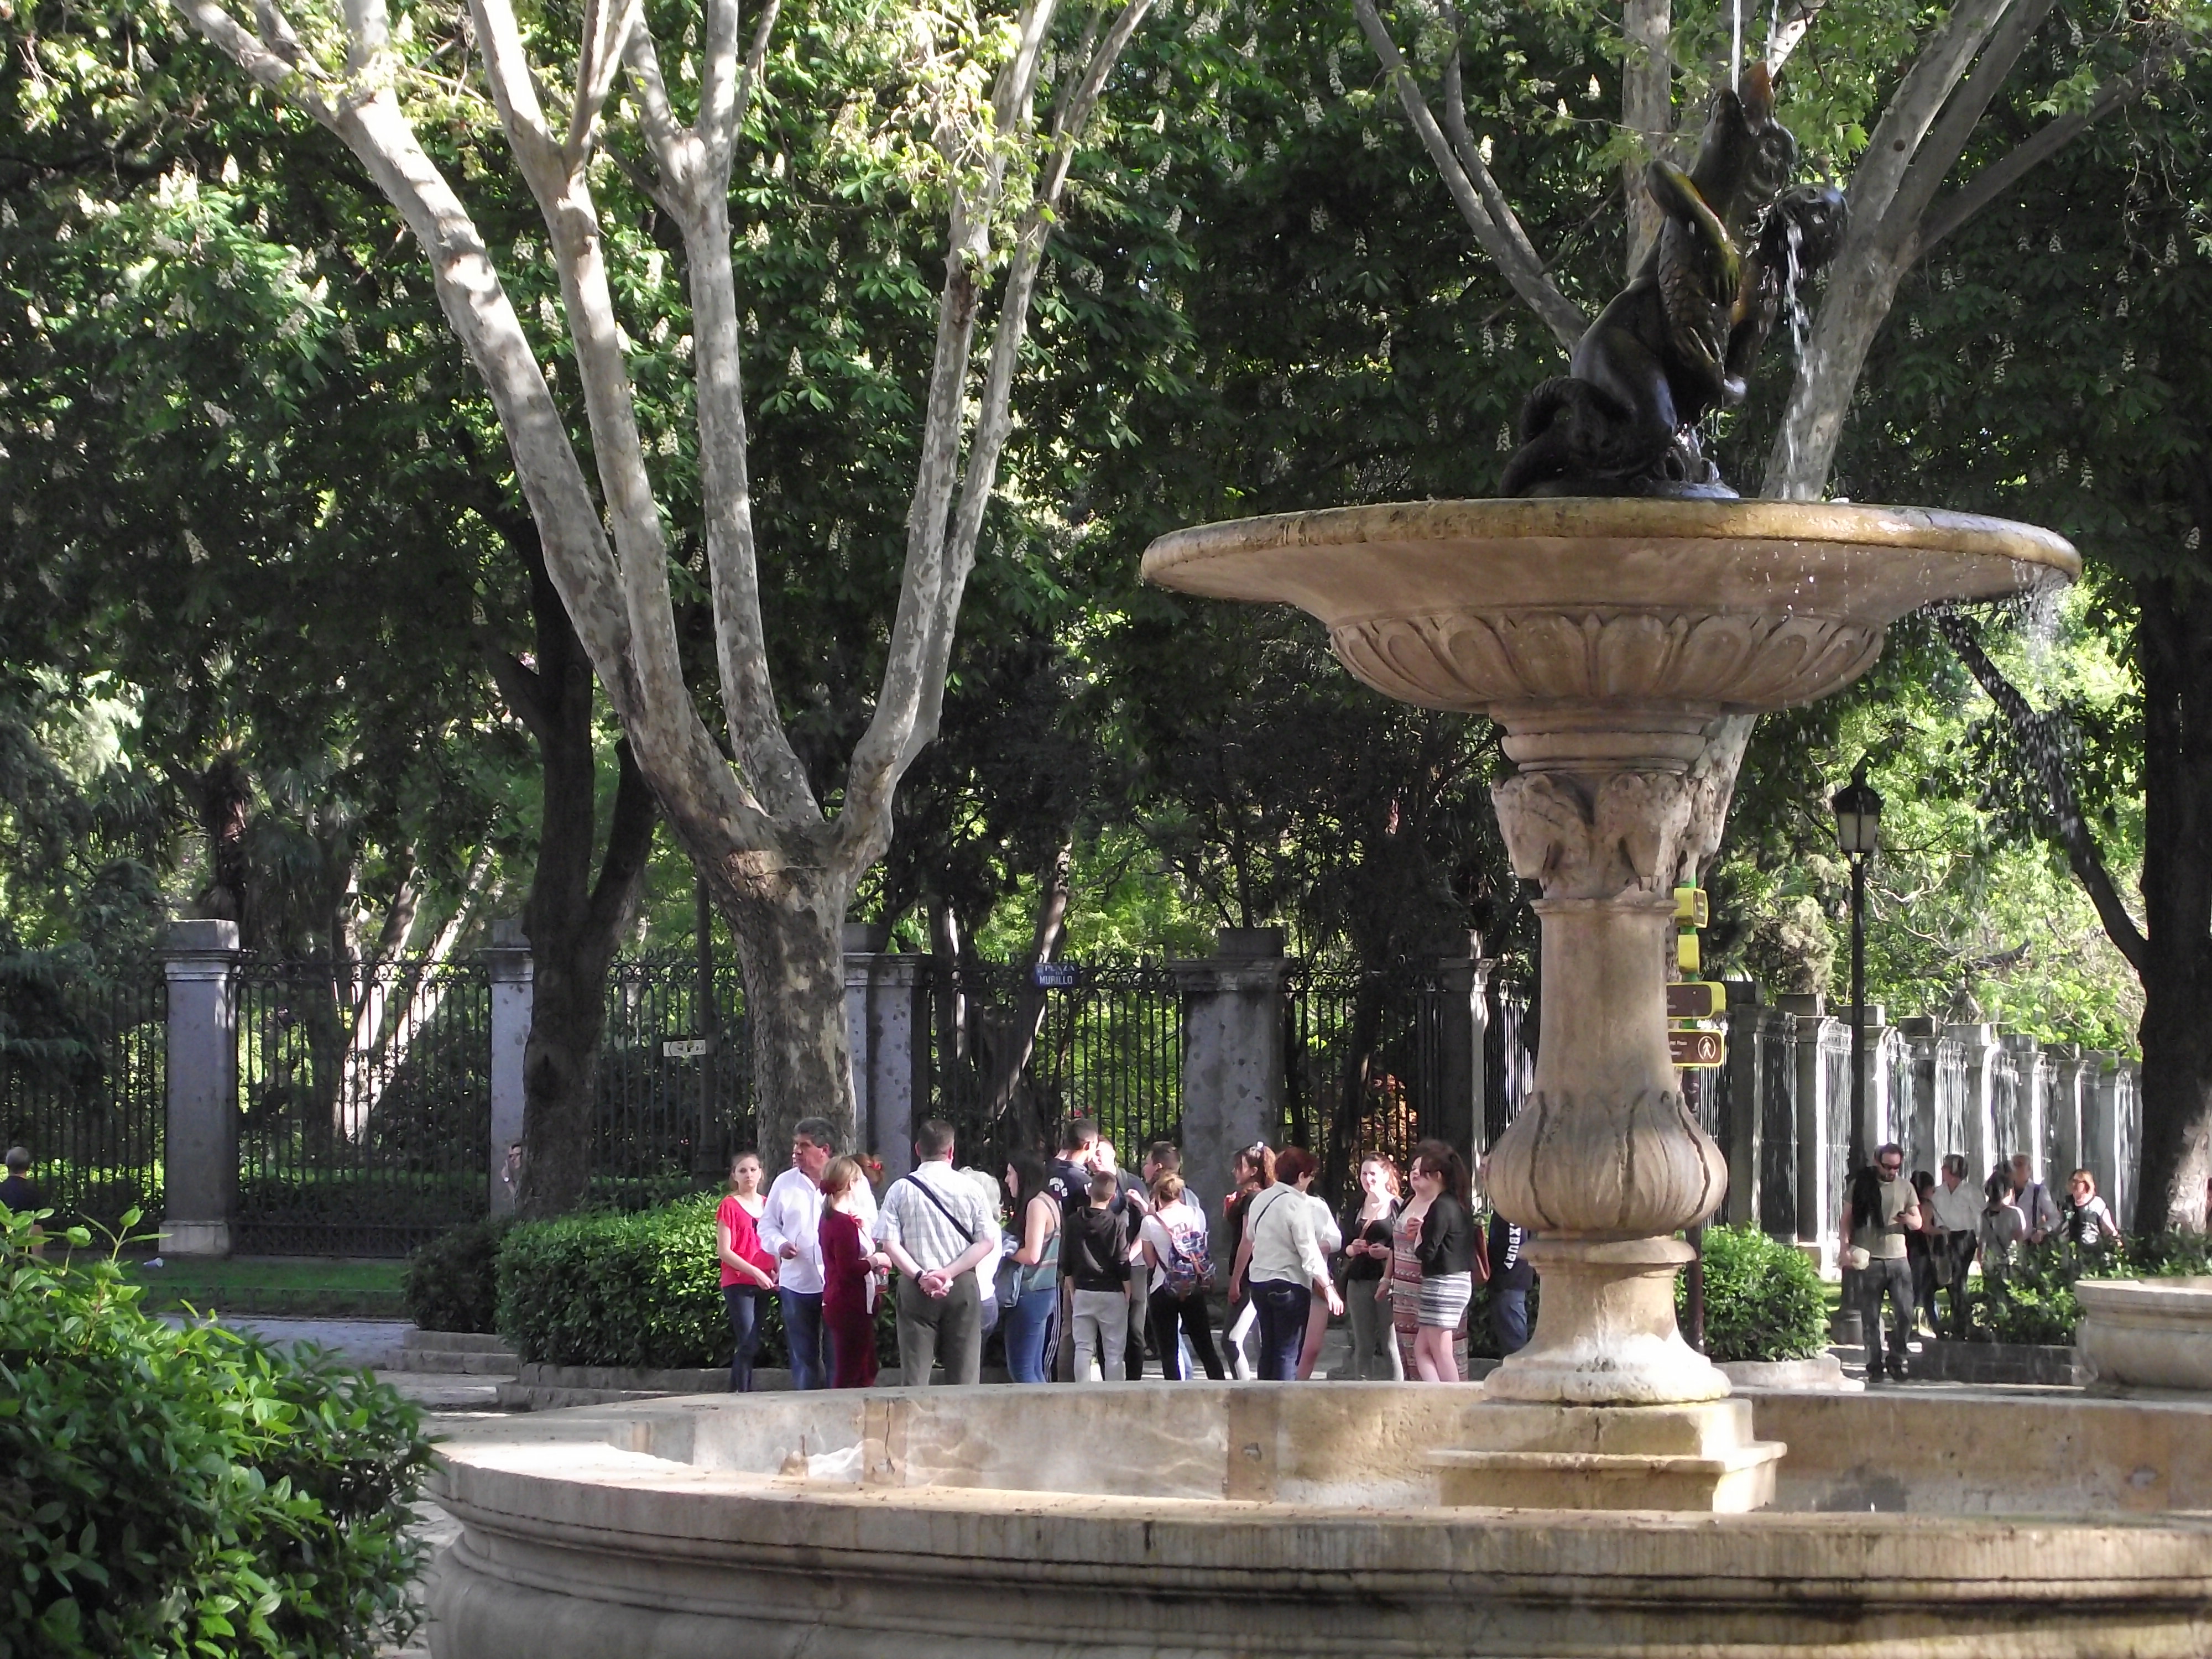 Paseo del Prado - stromy a fontány vás usmíří s auty i vedrem